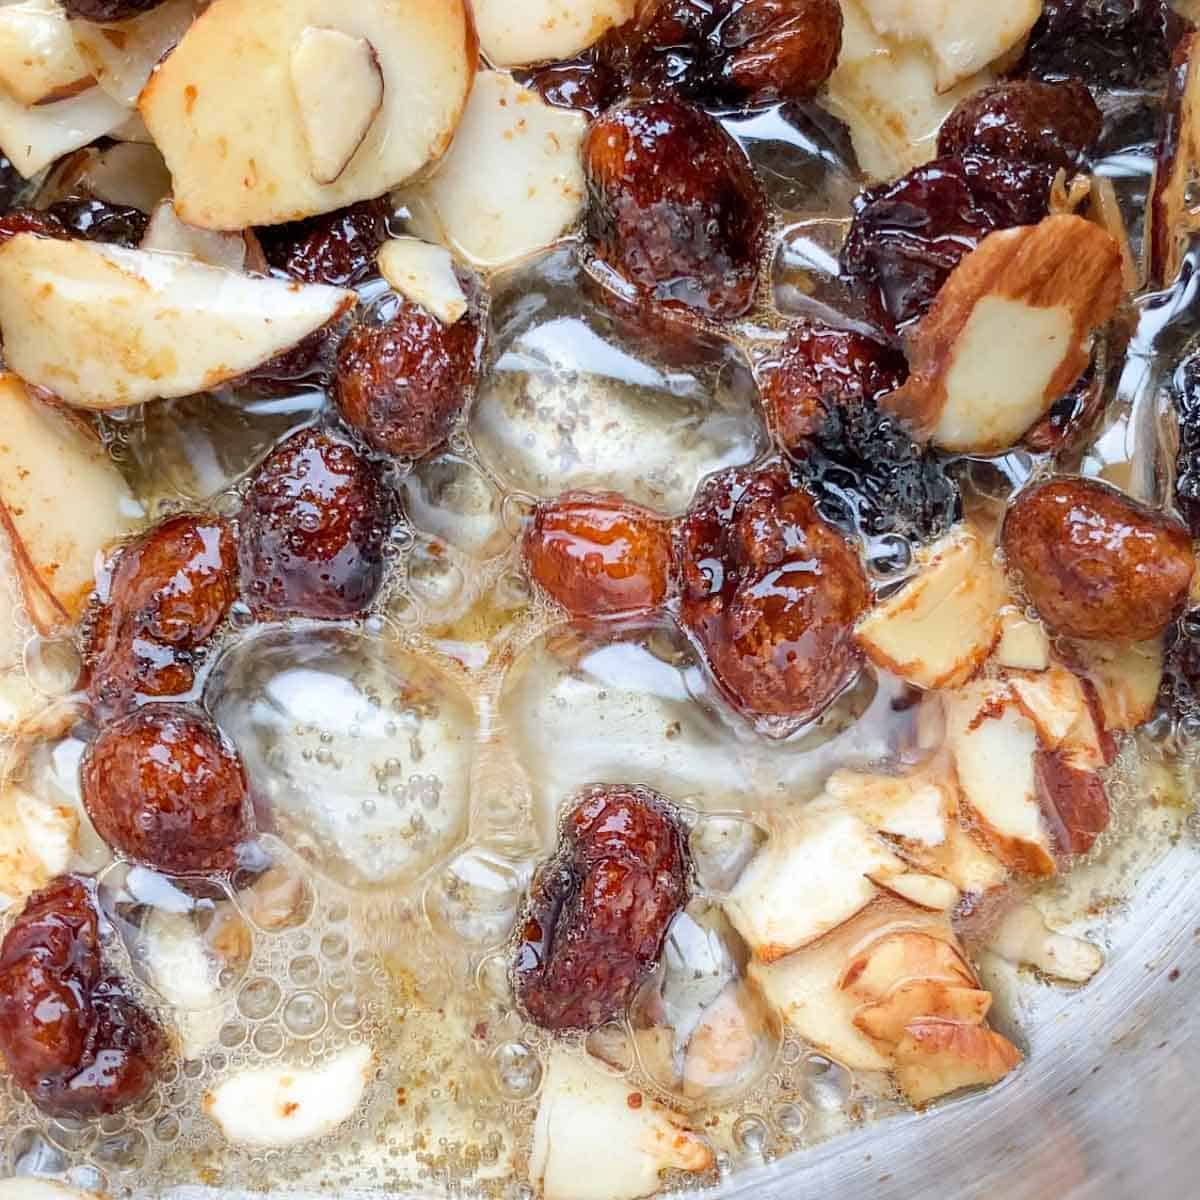 Raisins and nuts roasting in ghee